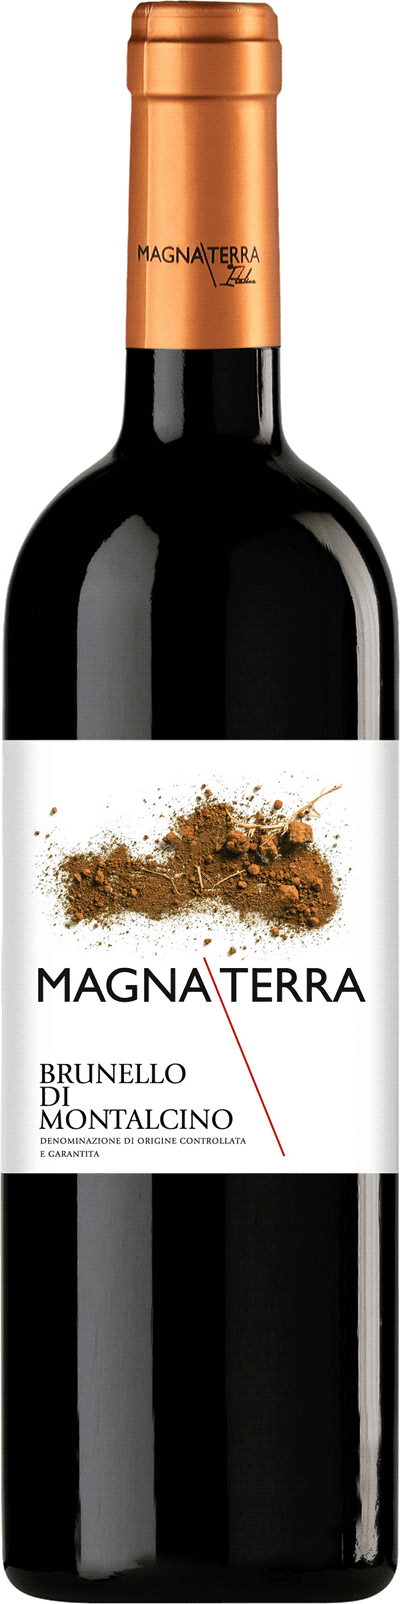 Magna Terra Brunello di Montalcino, 2017